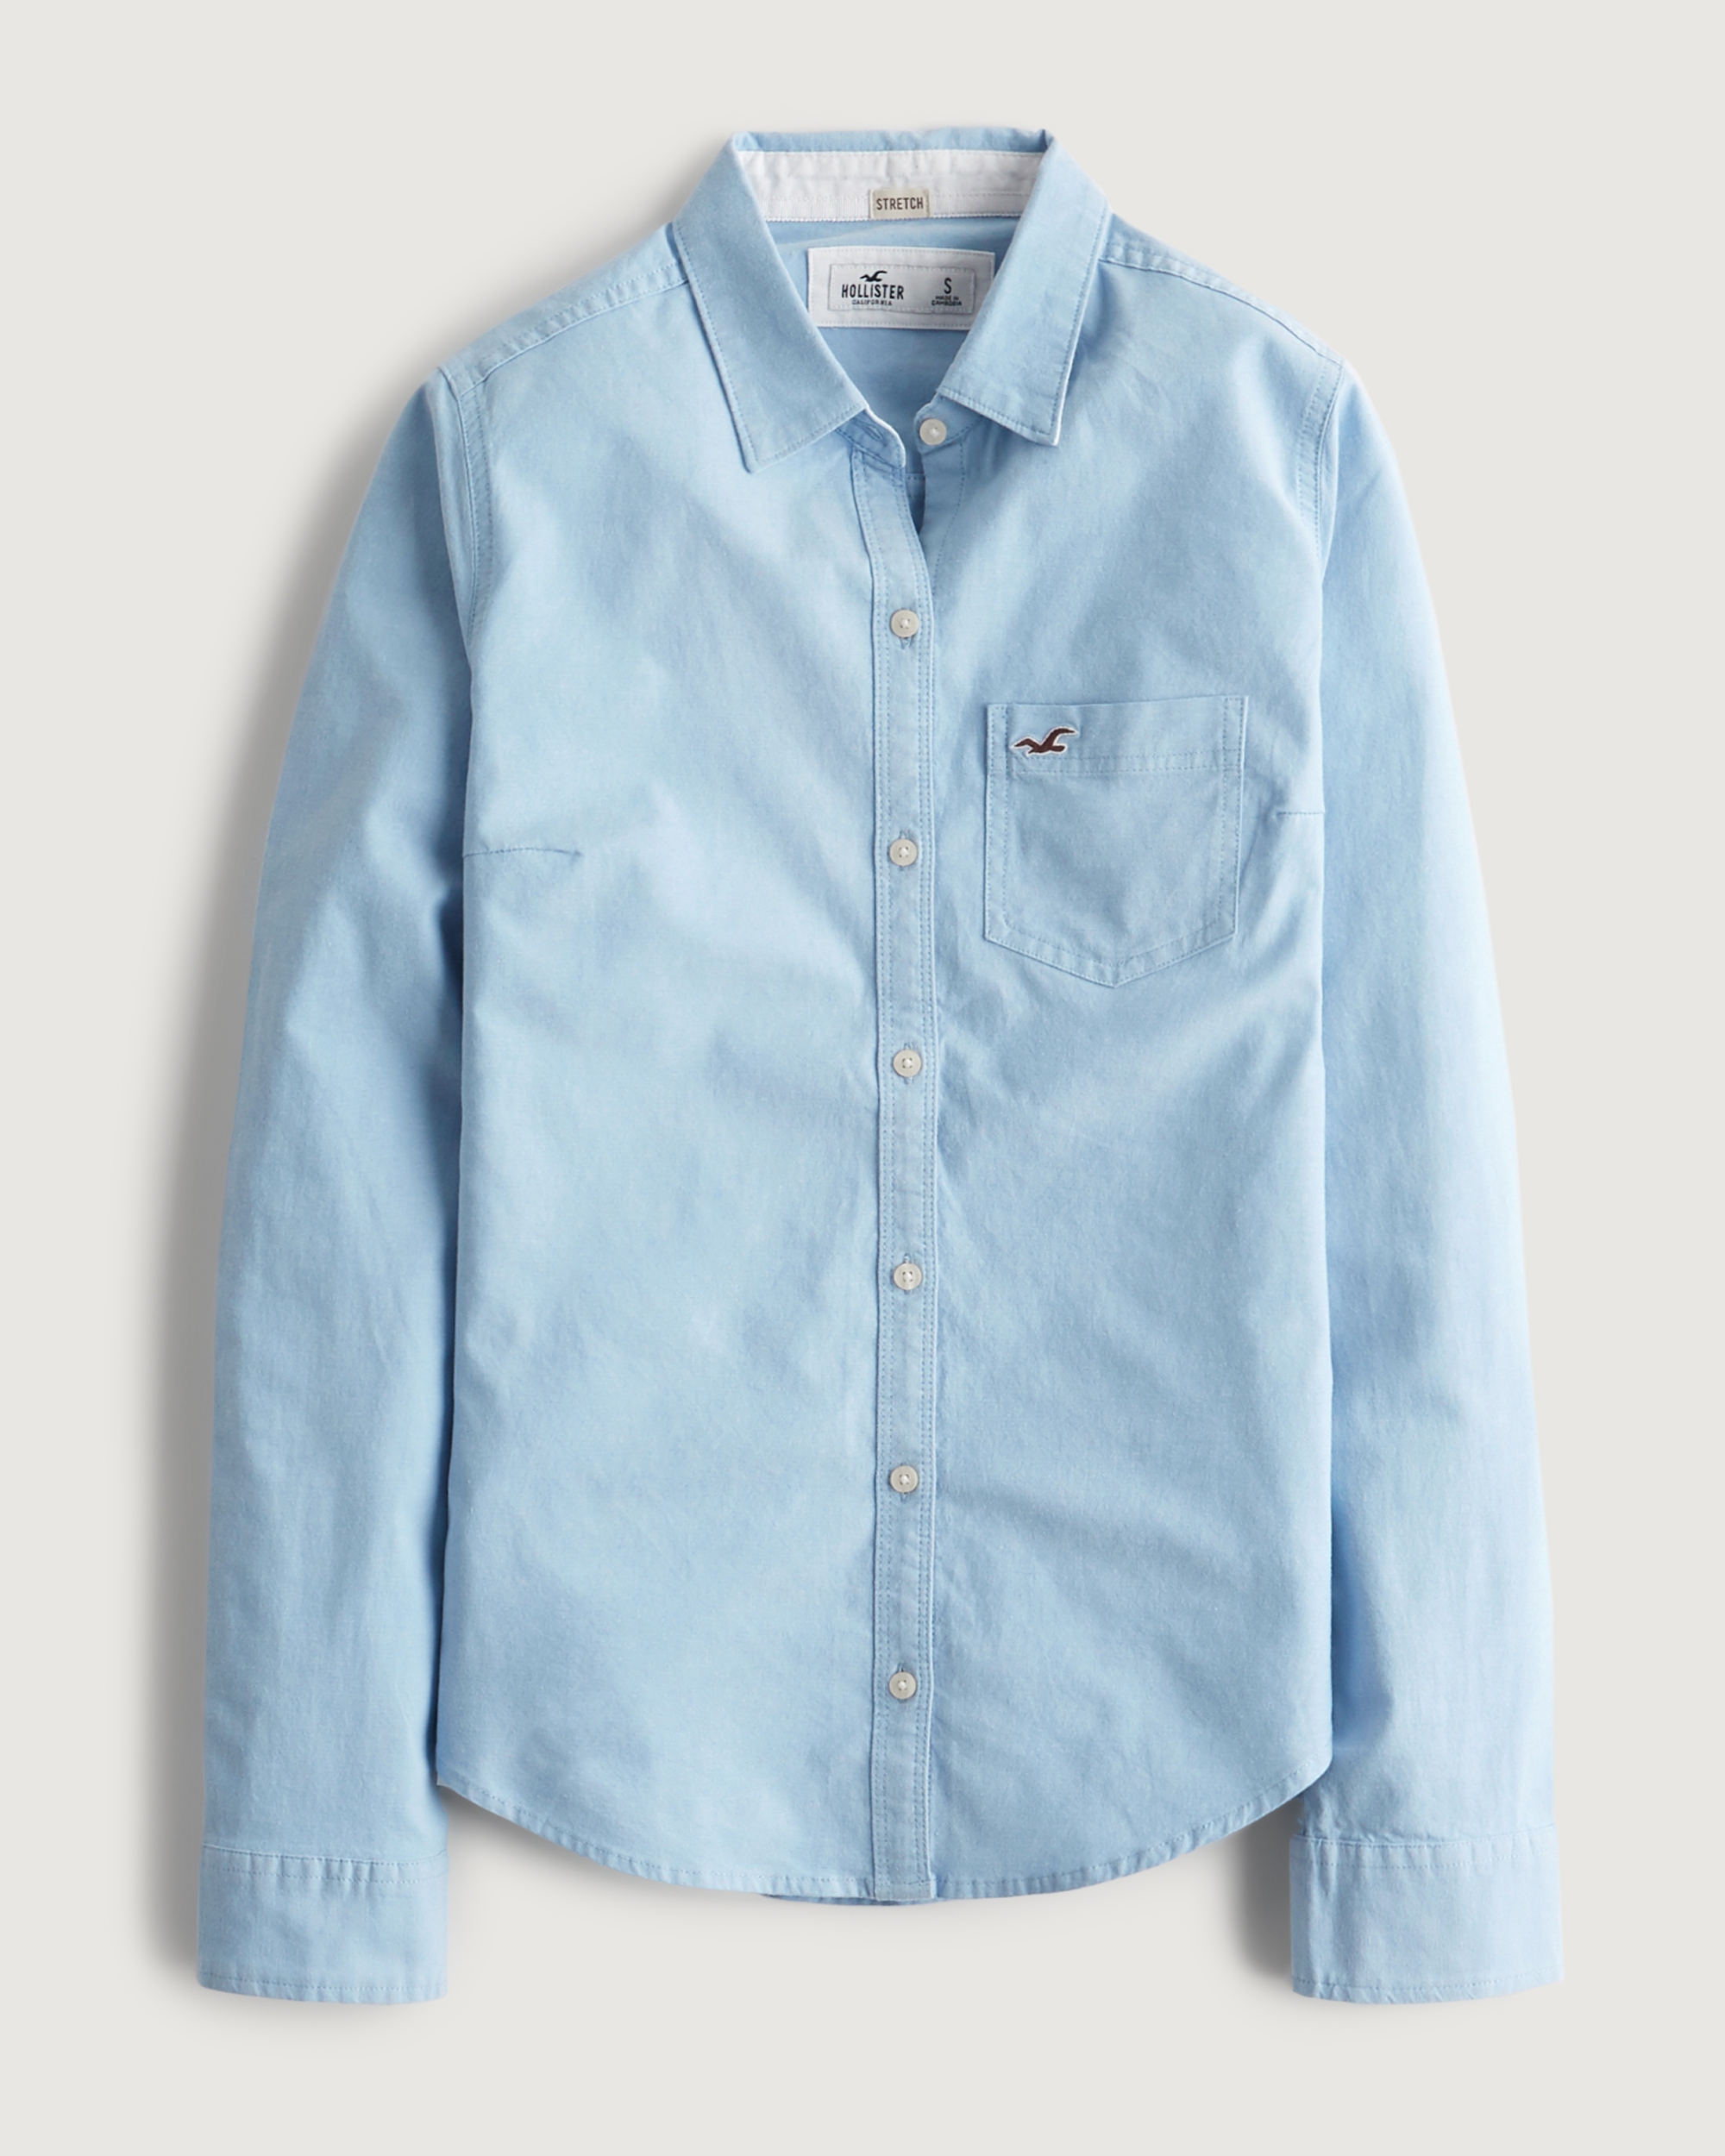 Girls Button-Down Shirts | Hollister Co.